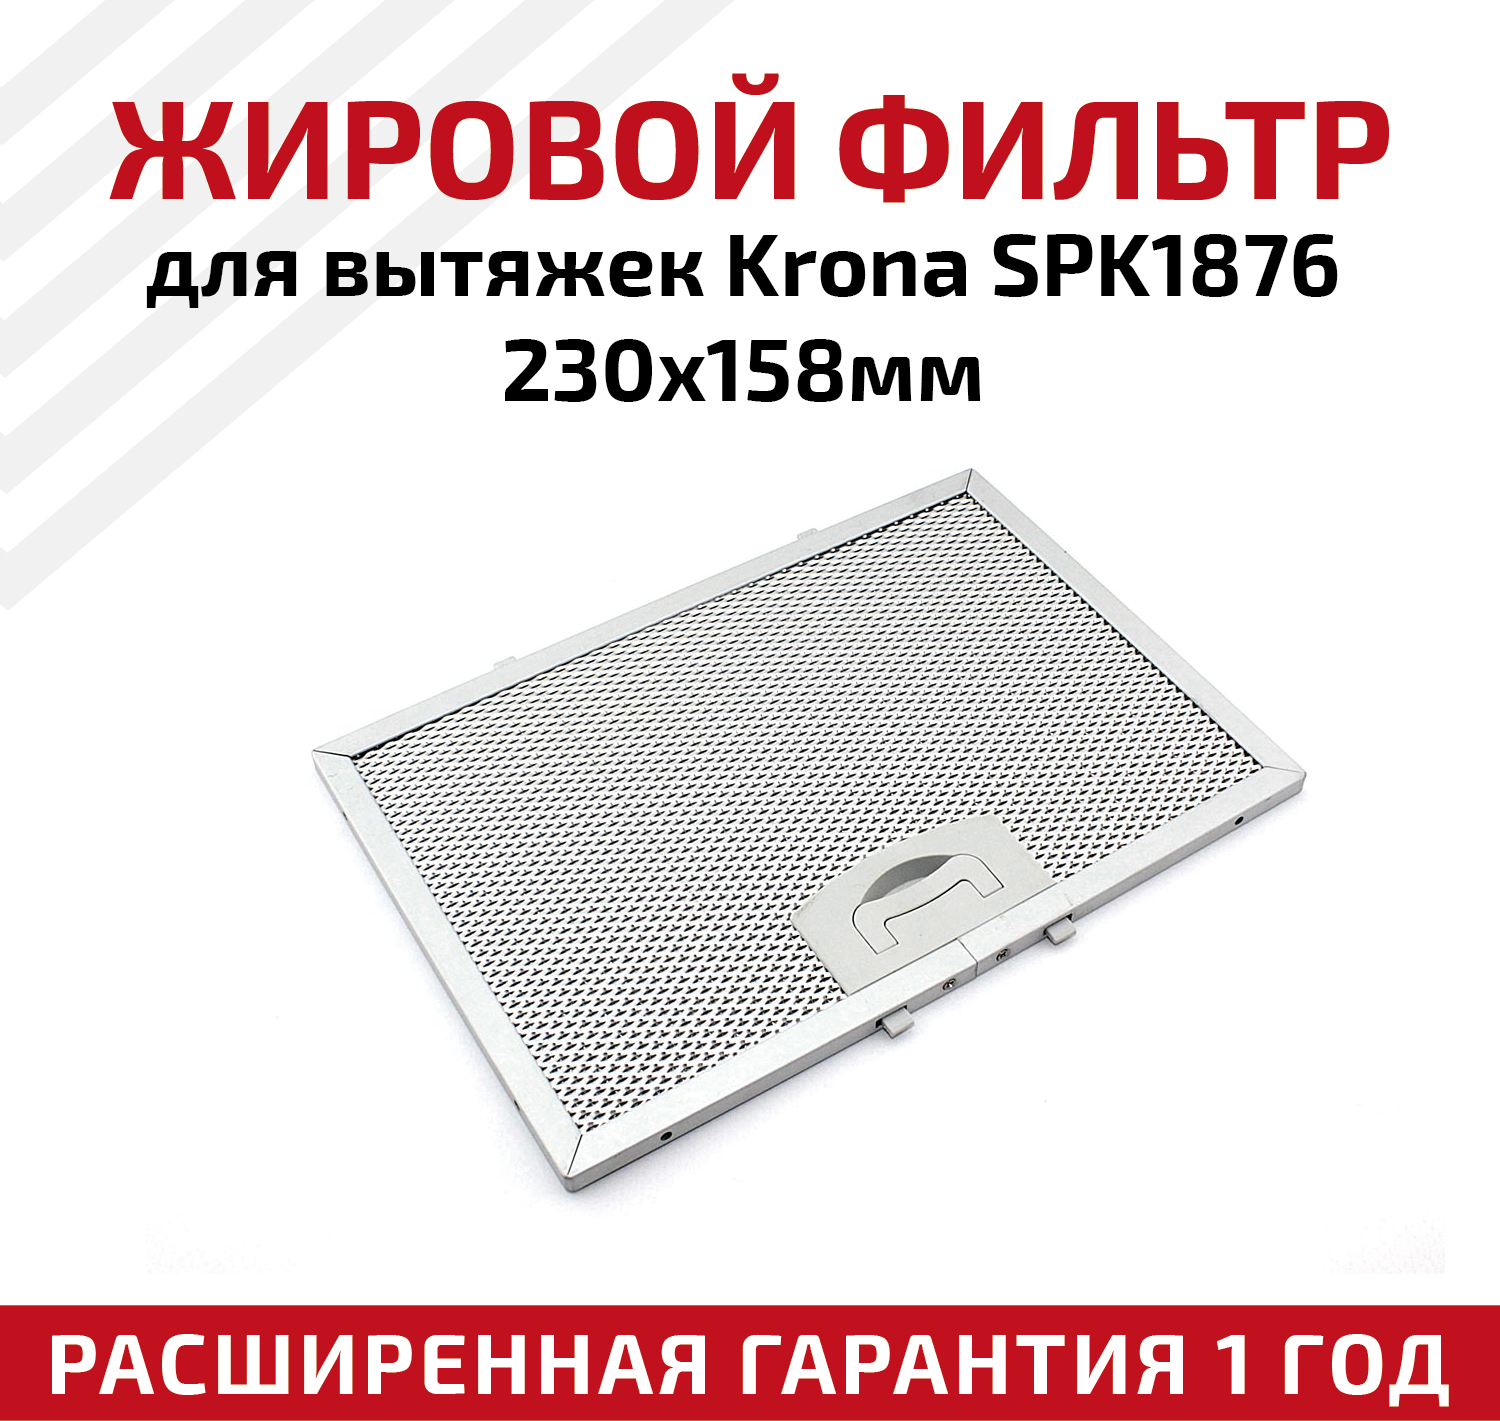 Жировой фильтр (кассета) алюминиевый (металлический) рамочный SPK1876 для вытяжек Krona многоразовый 230х158мм